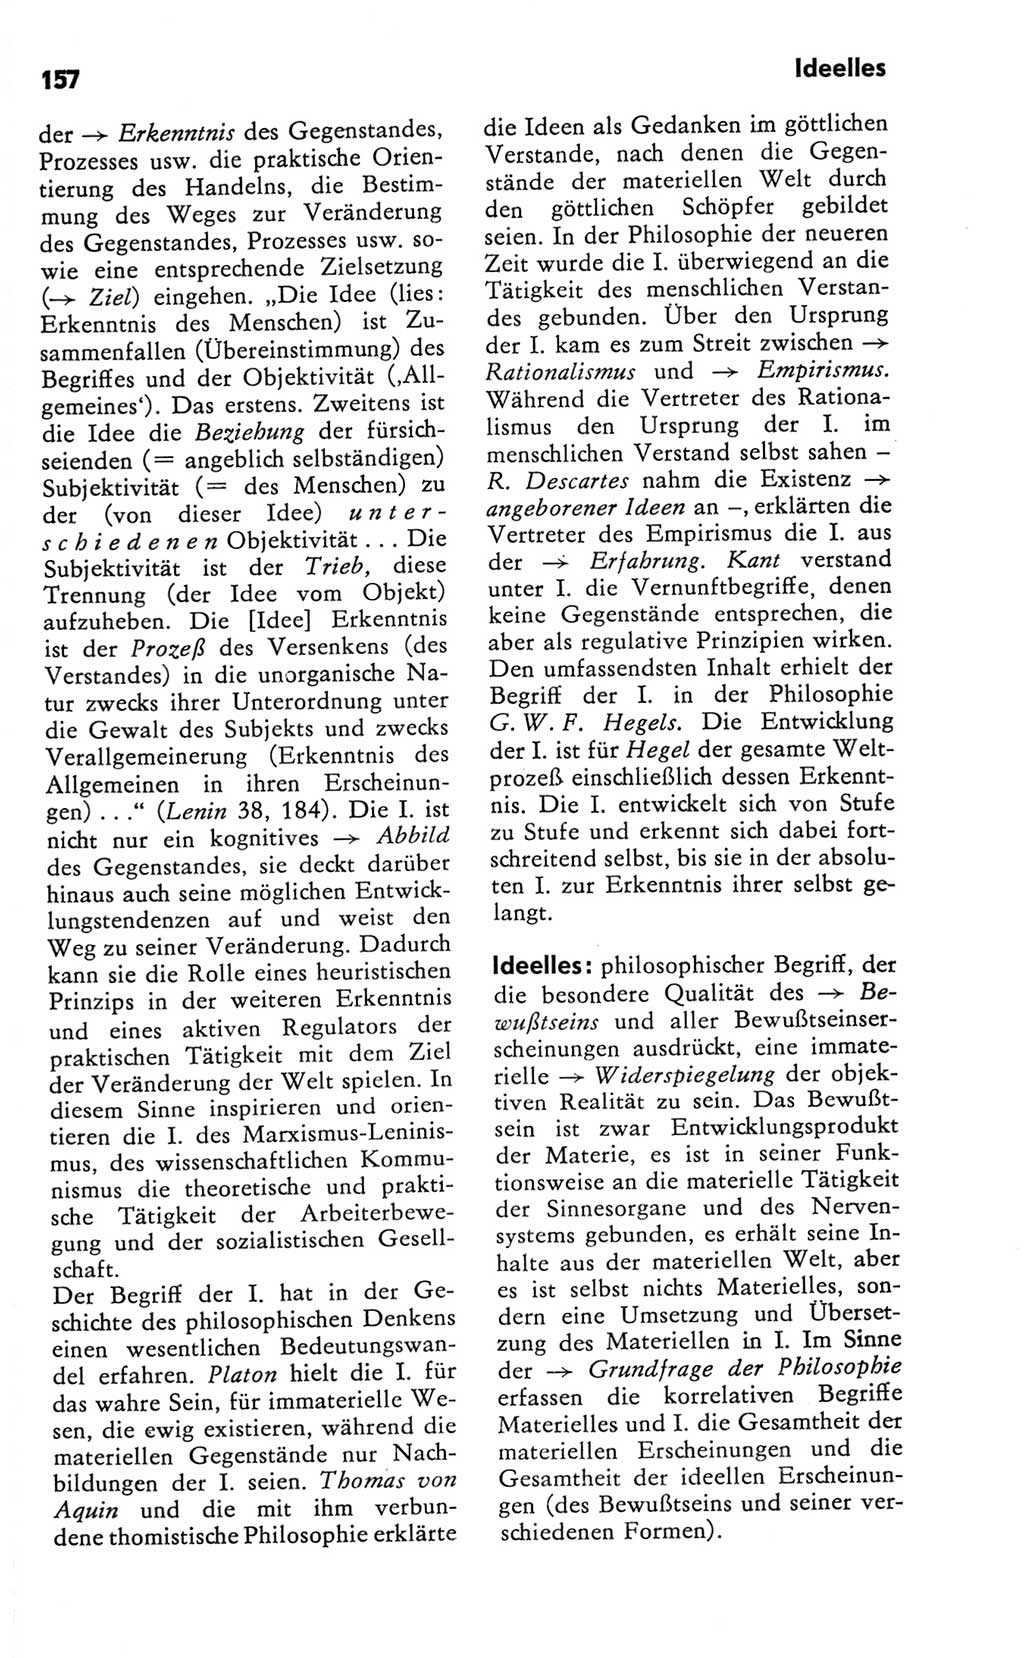 Kleines Wörterbuch der marxistisch-leninistischen Philosophie [Deutsche Demokratische Republik (DDR)] 1981, Seite 157 (Kl. Wb. ML Phil. DDR 1981, S. 157)